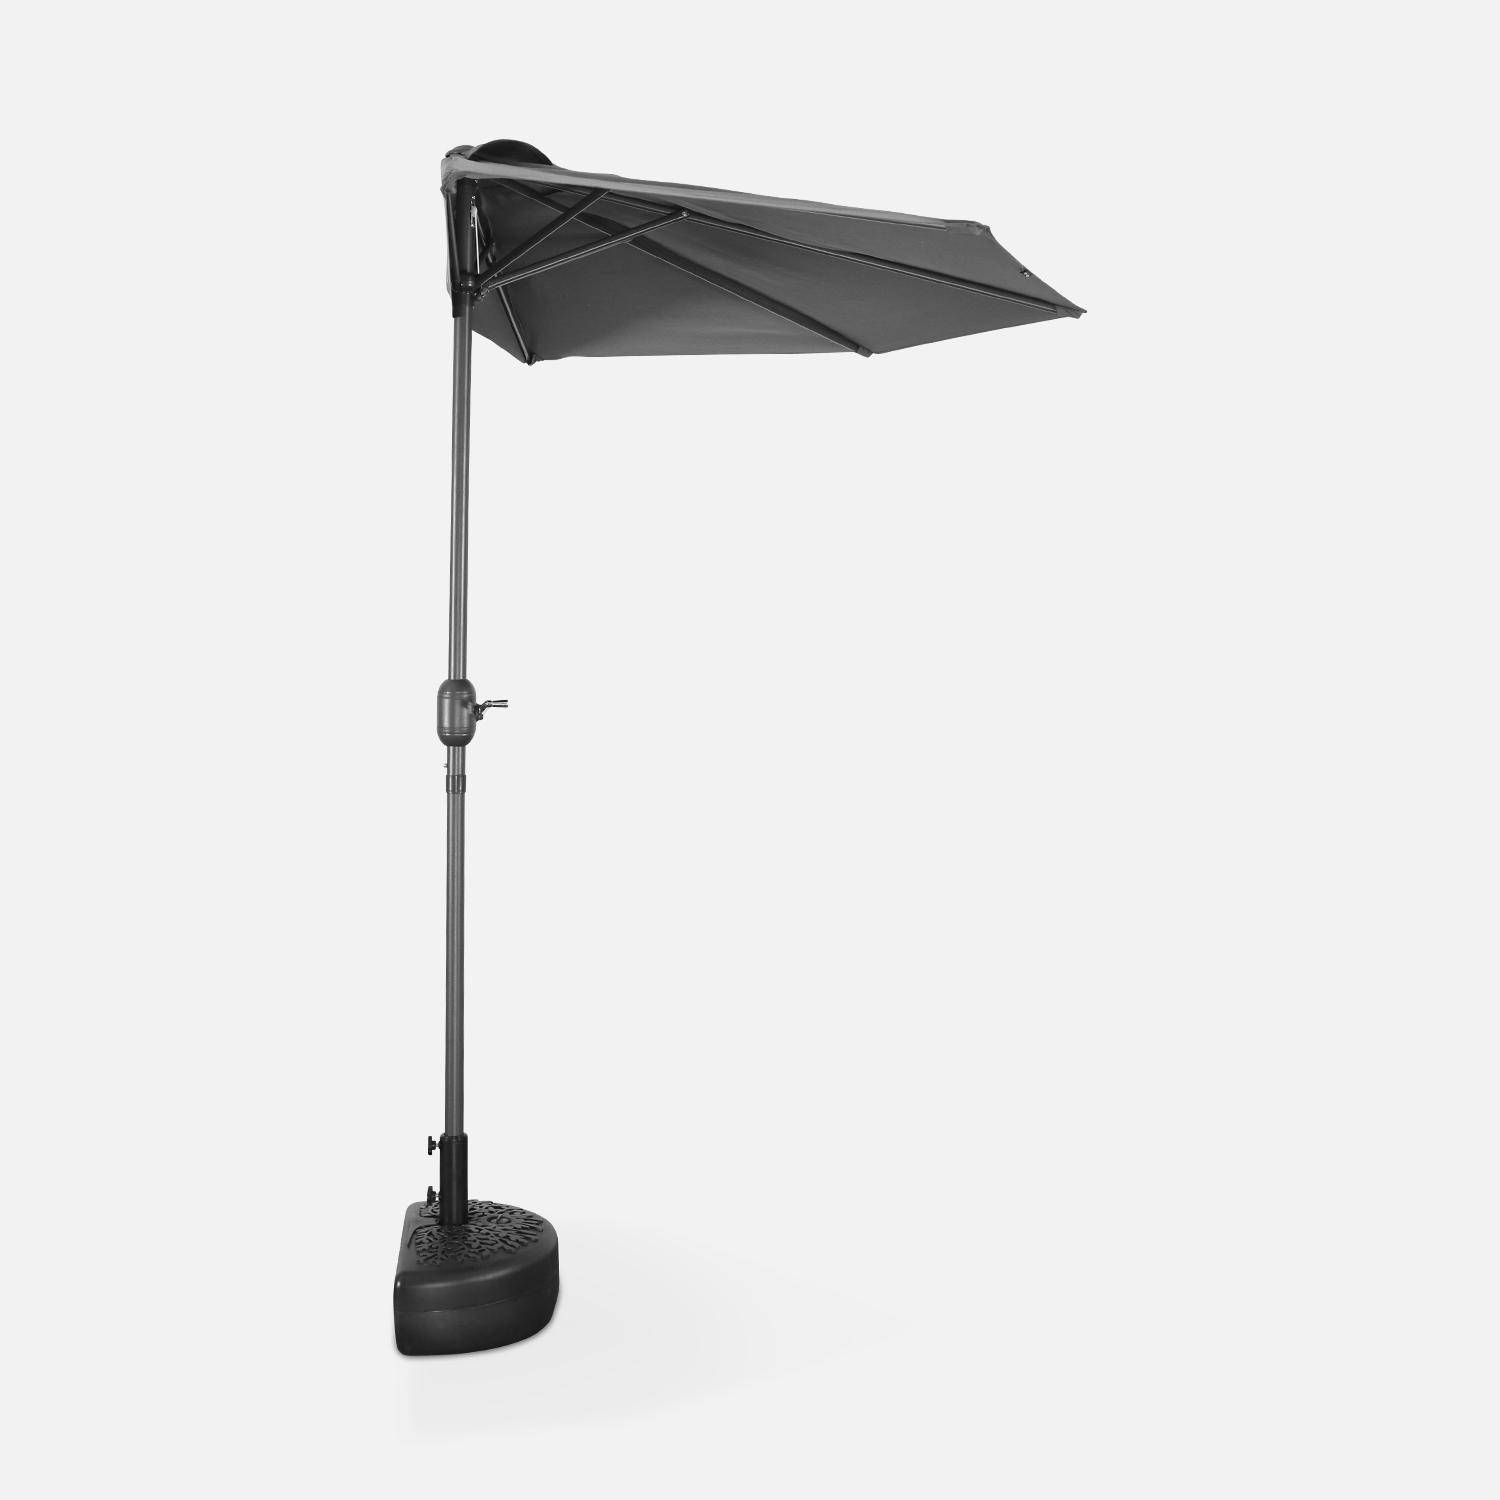  Parasol para balcón Ø250cm - CALVI - Medio parasol recto, mástil de aluminio con manivela, tejido gris Photo4